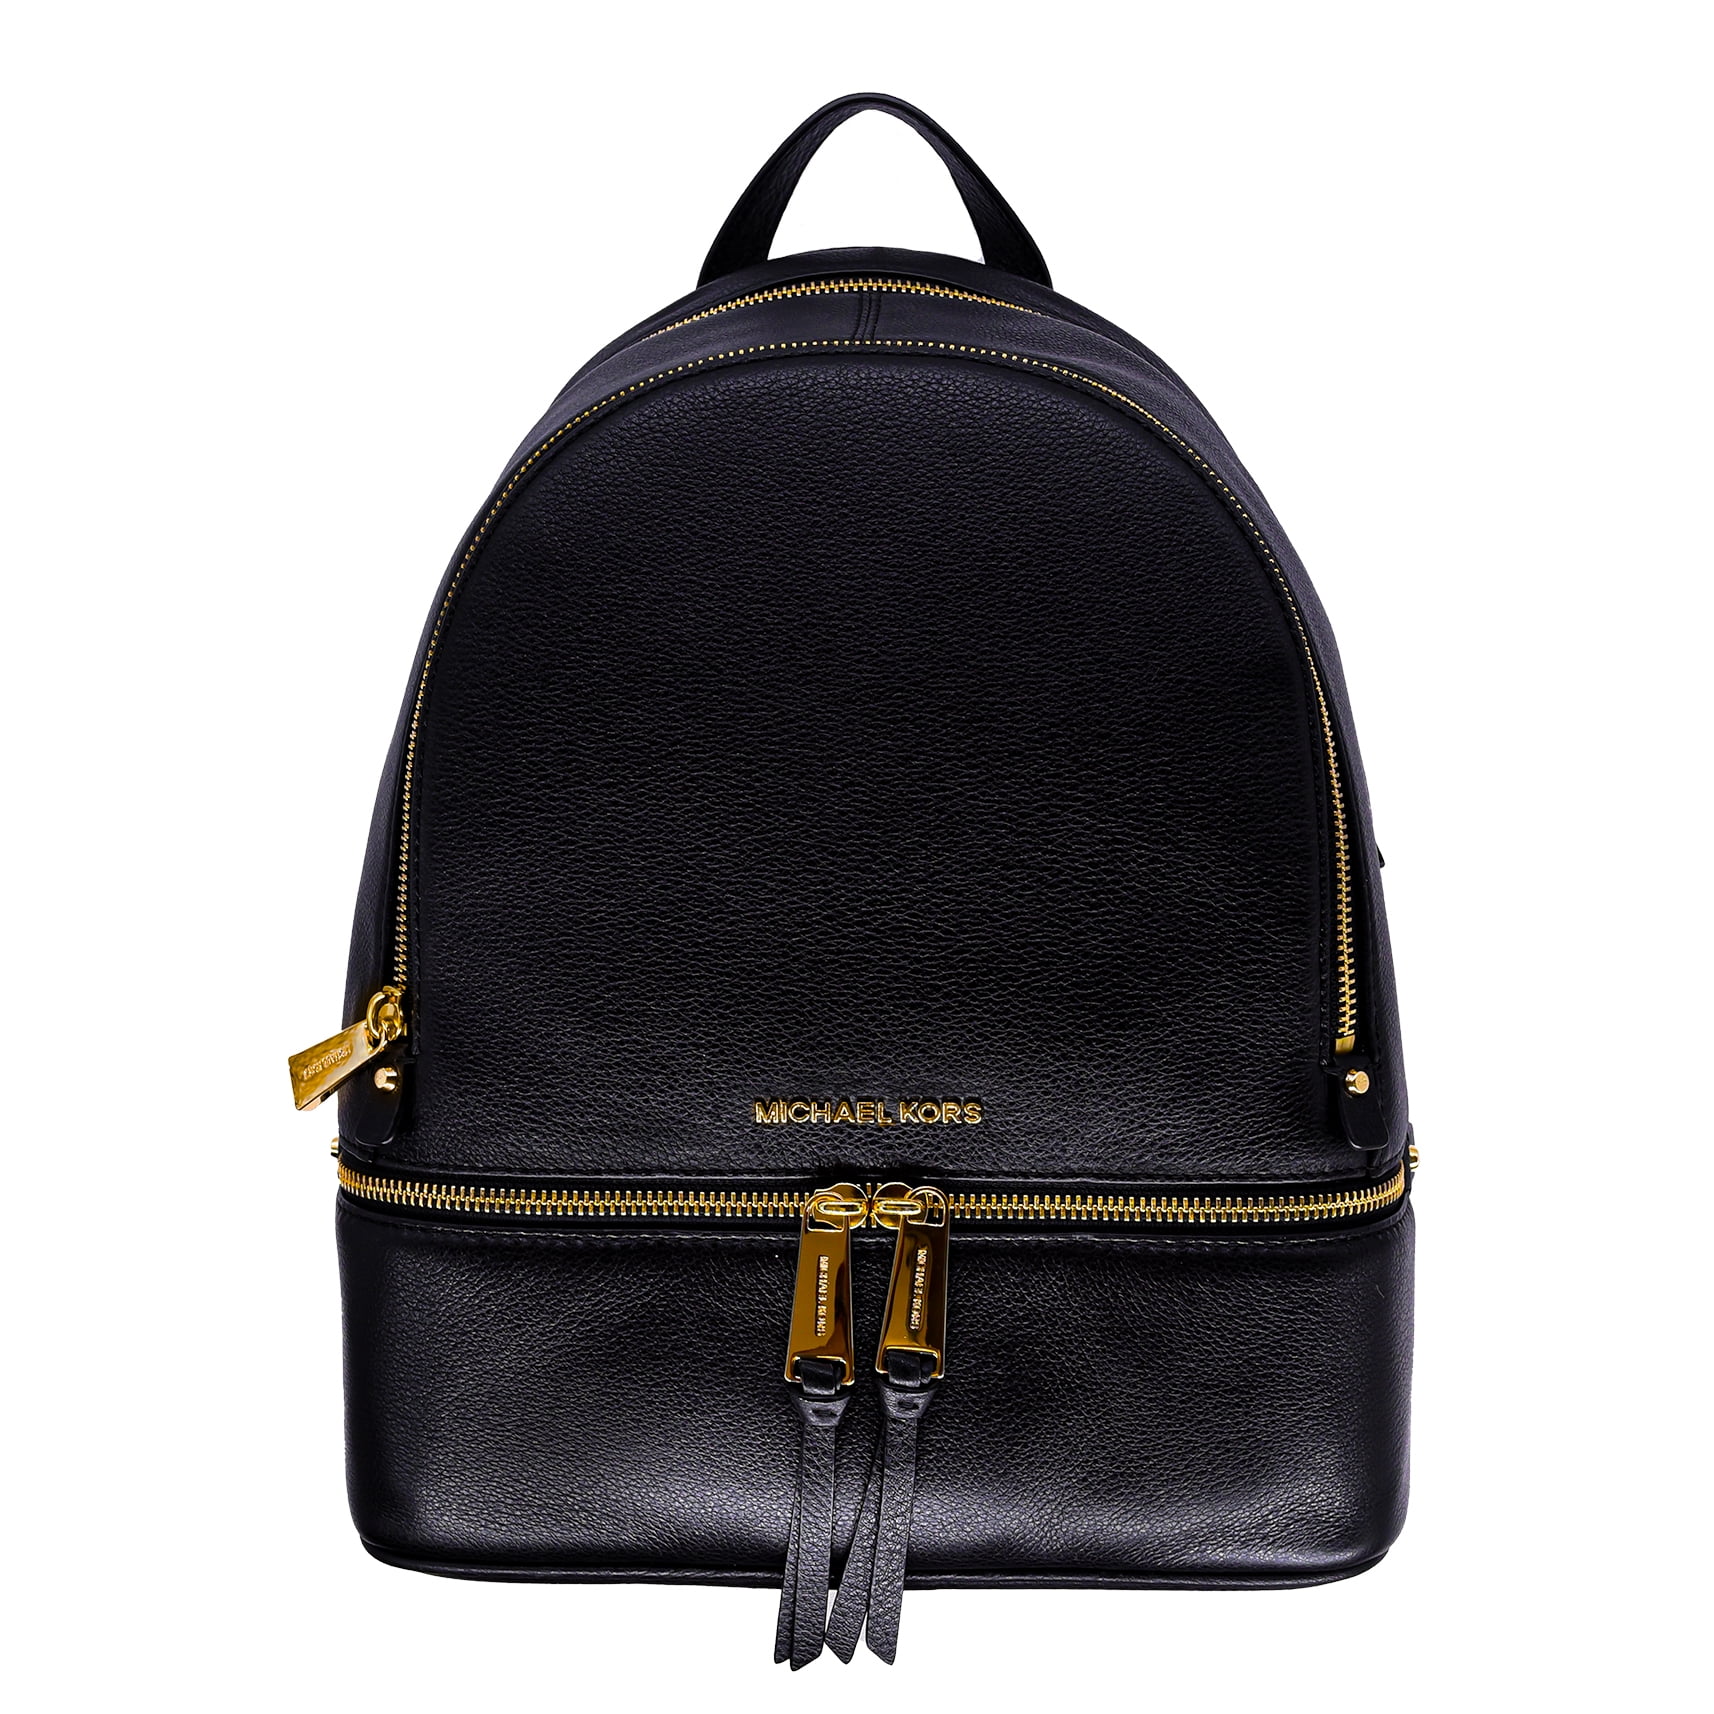 MK backpack for women